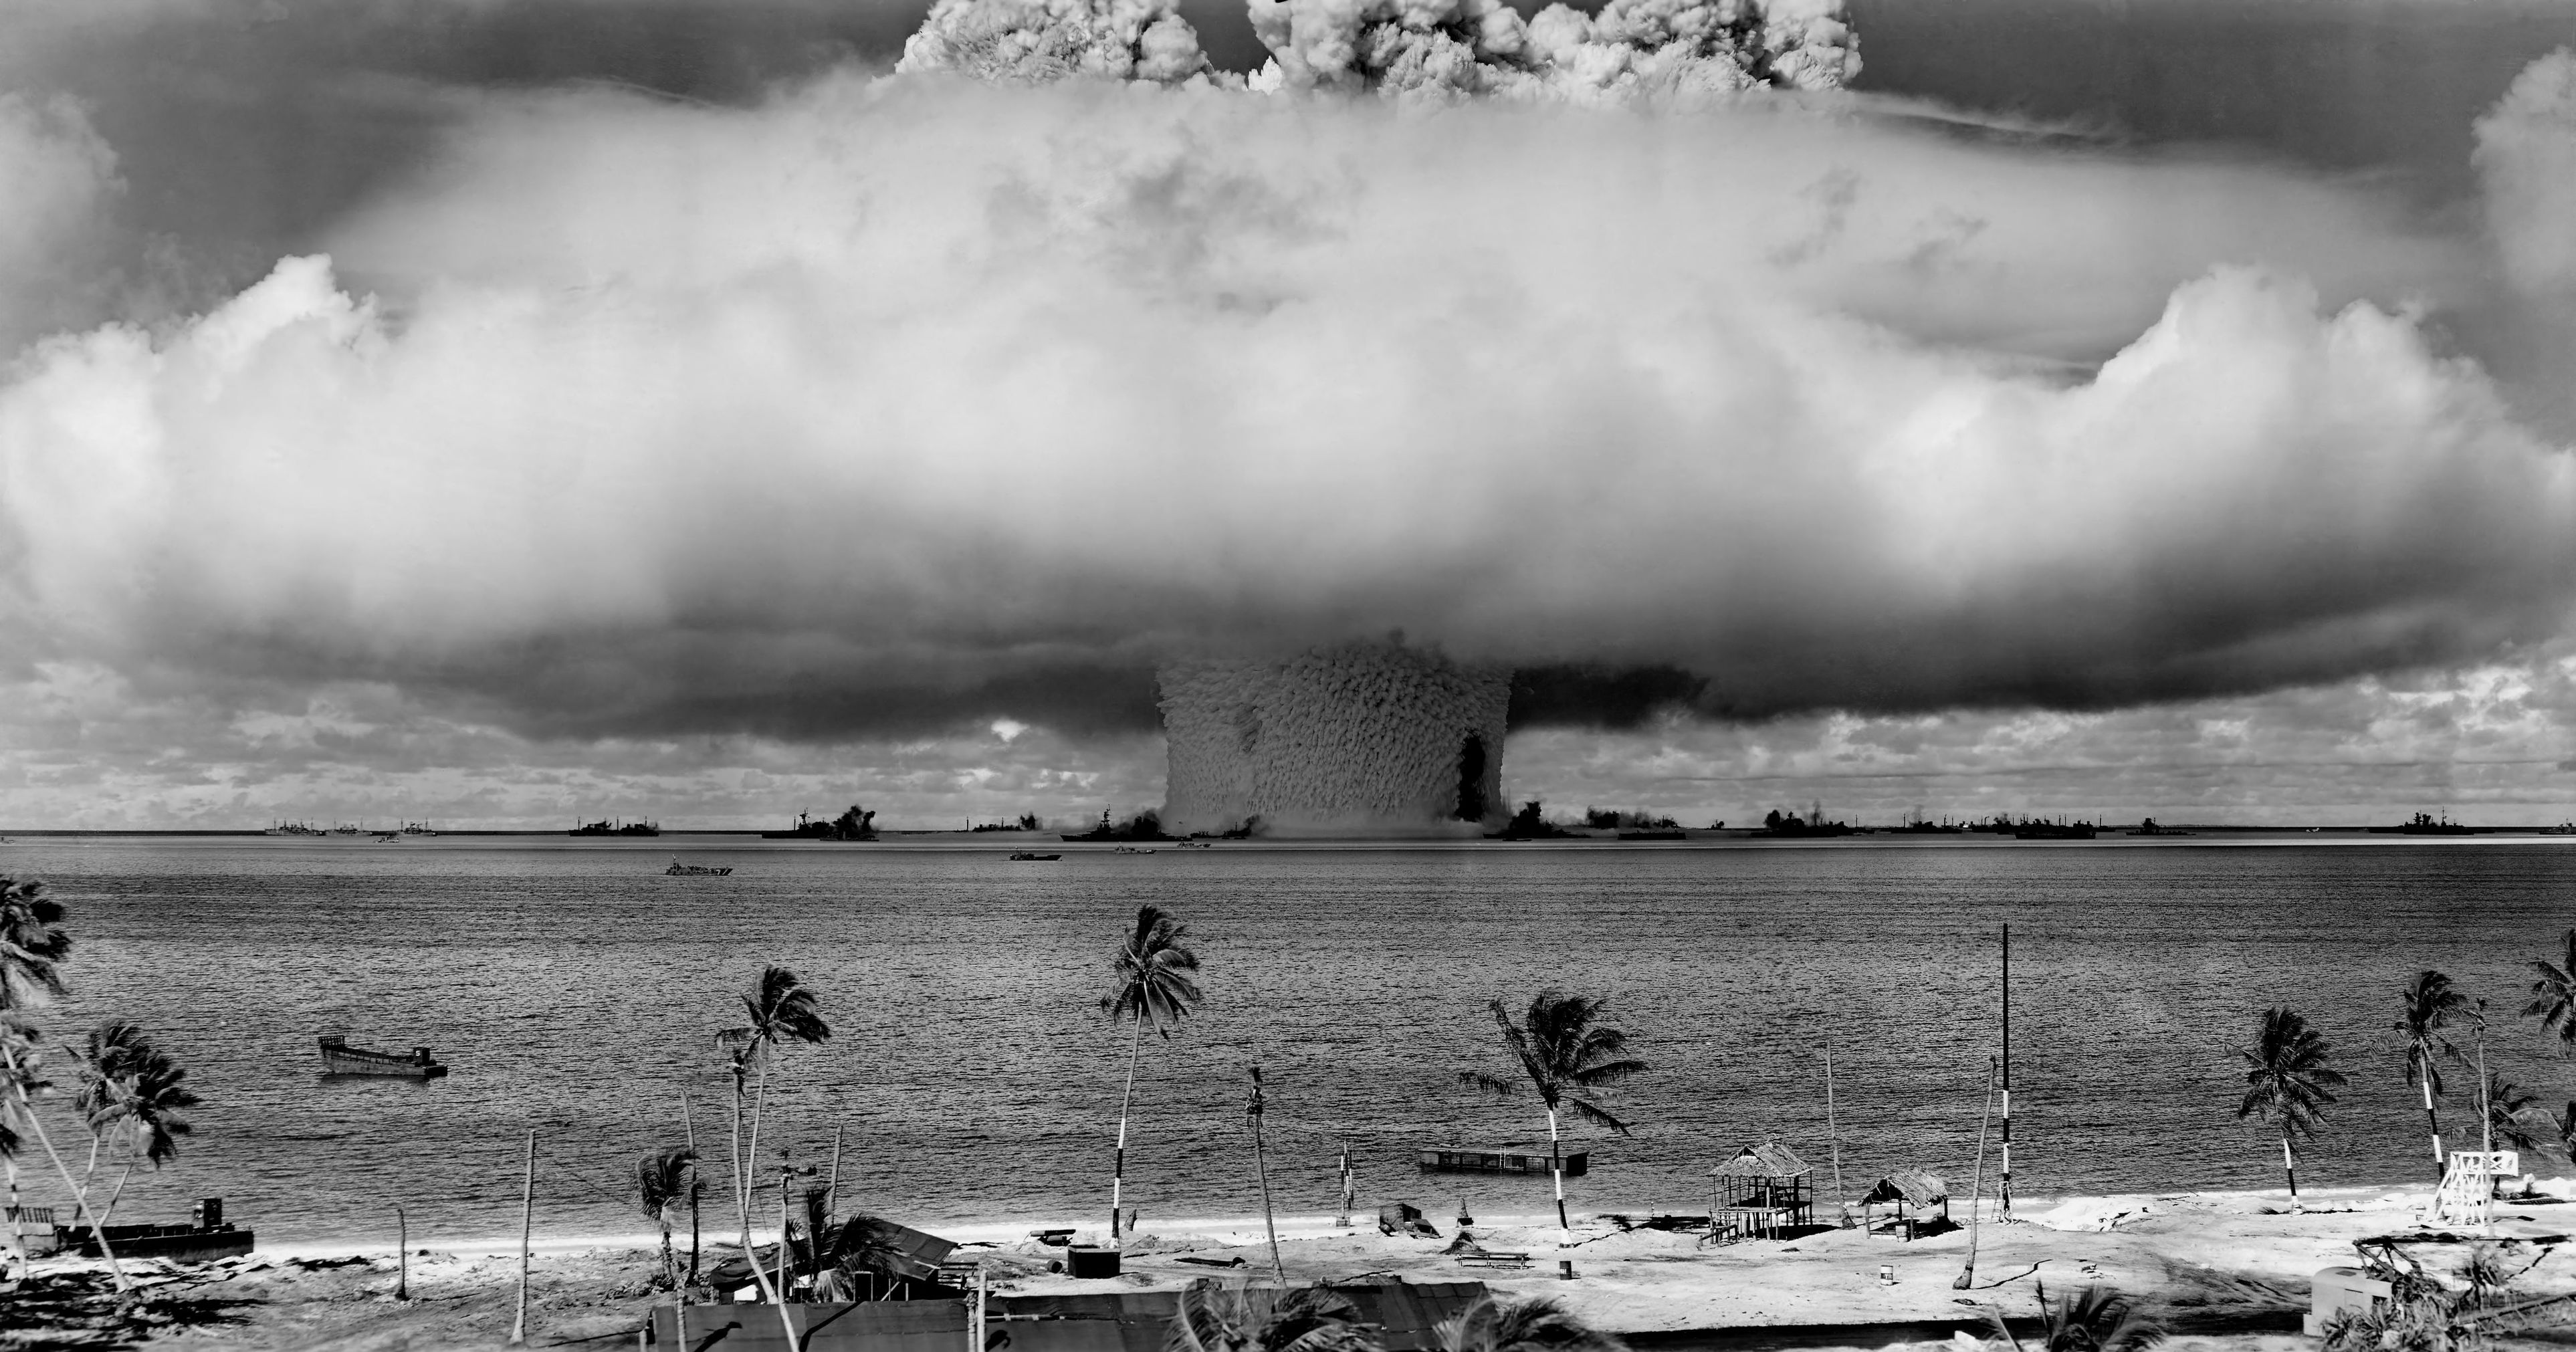 Hydrogen Bomb test at the Bikini atoll.